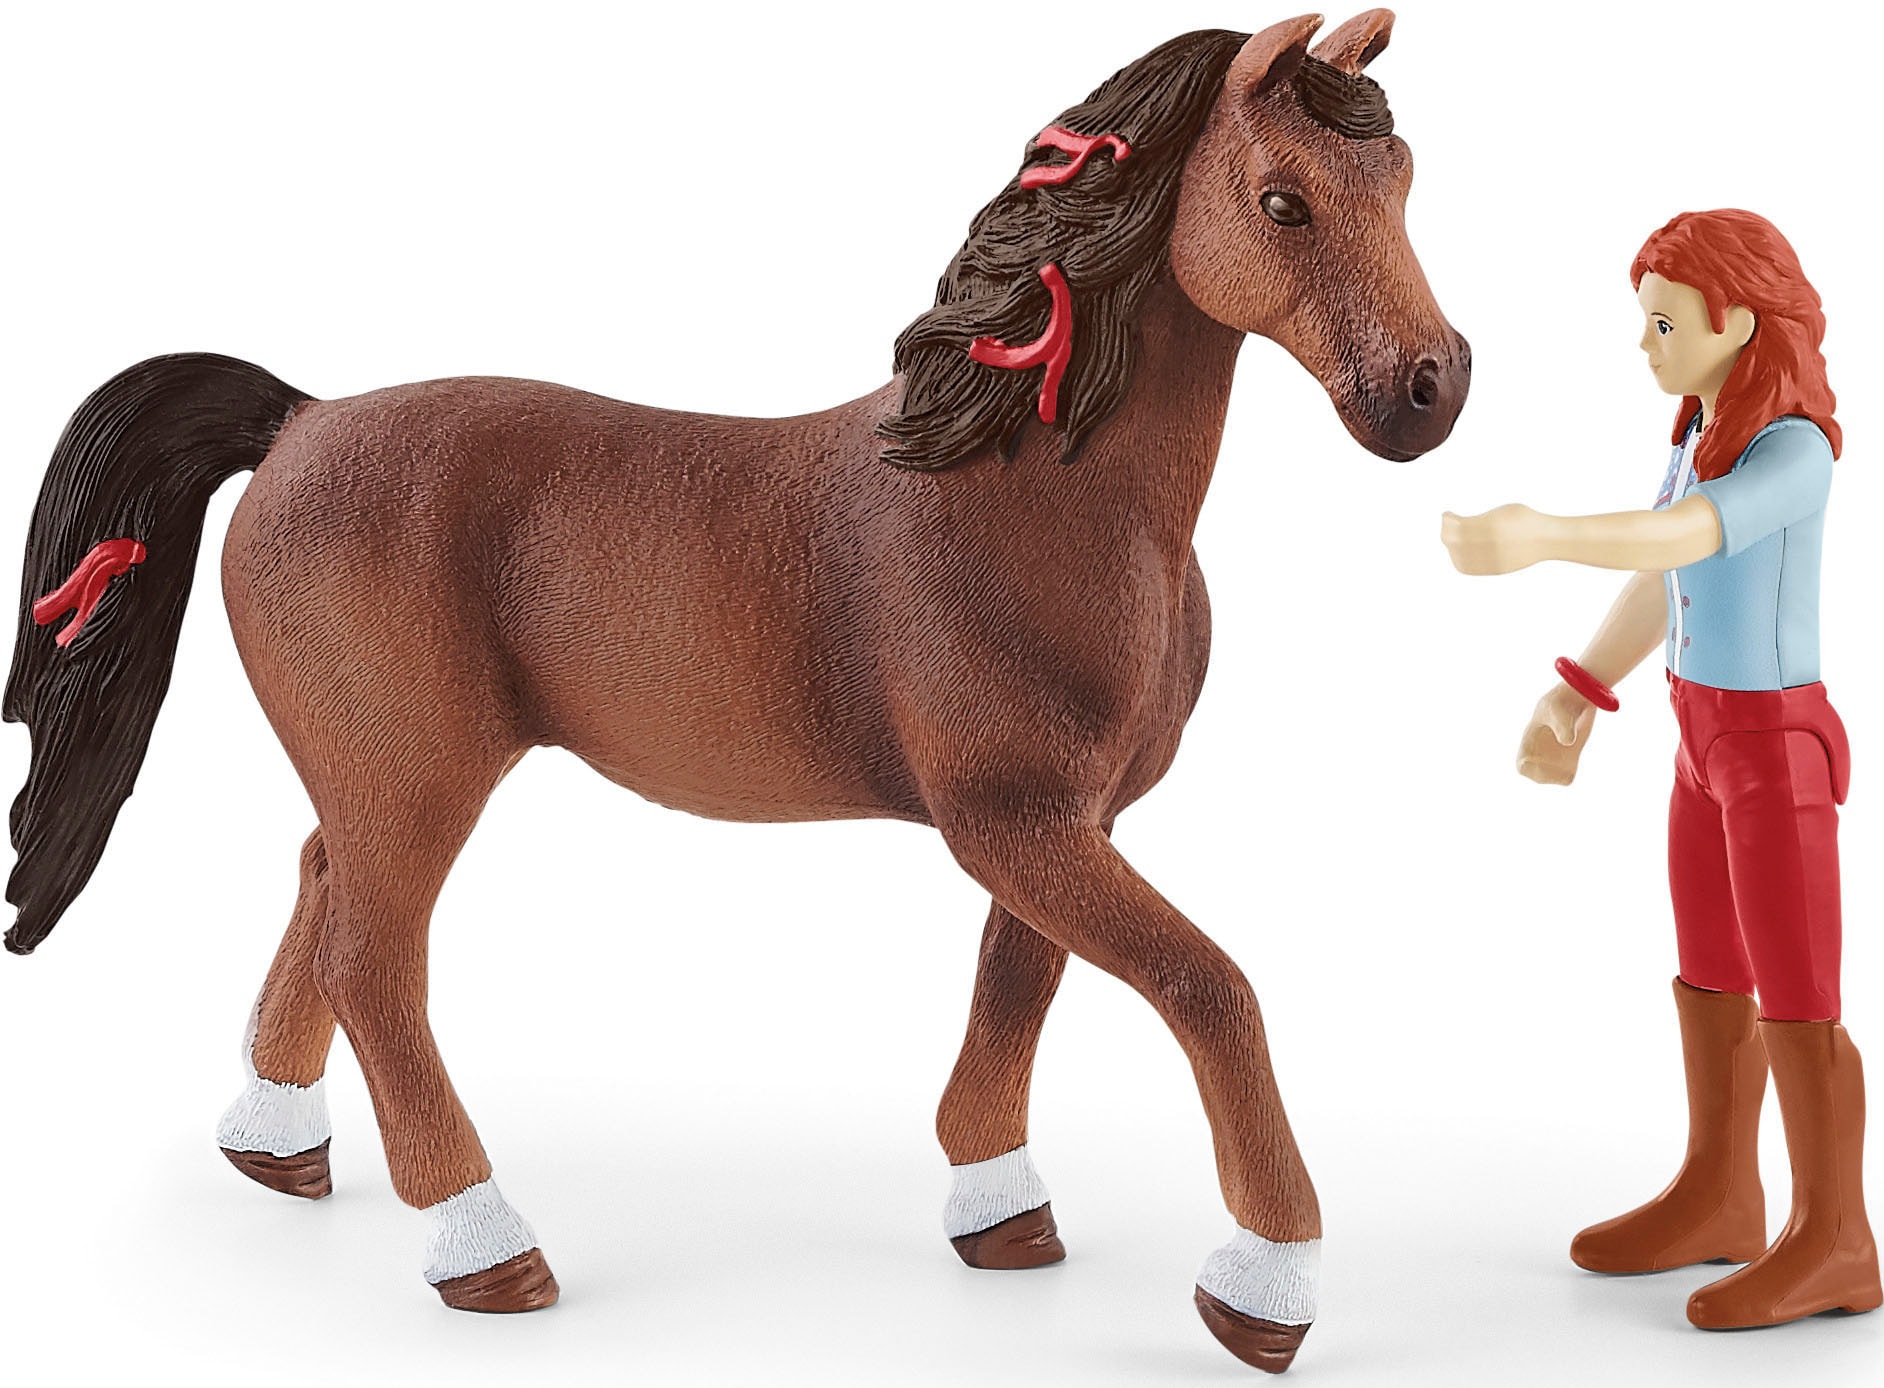 Schleich® Spielfigur »HORSE CLUB, Hannah und Cayenne (42539)«